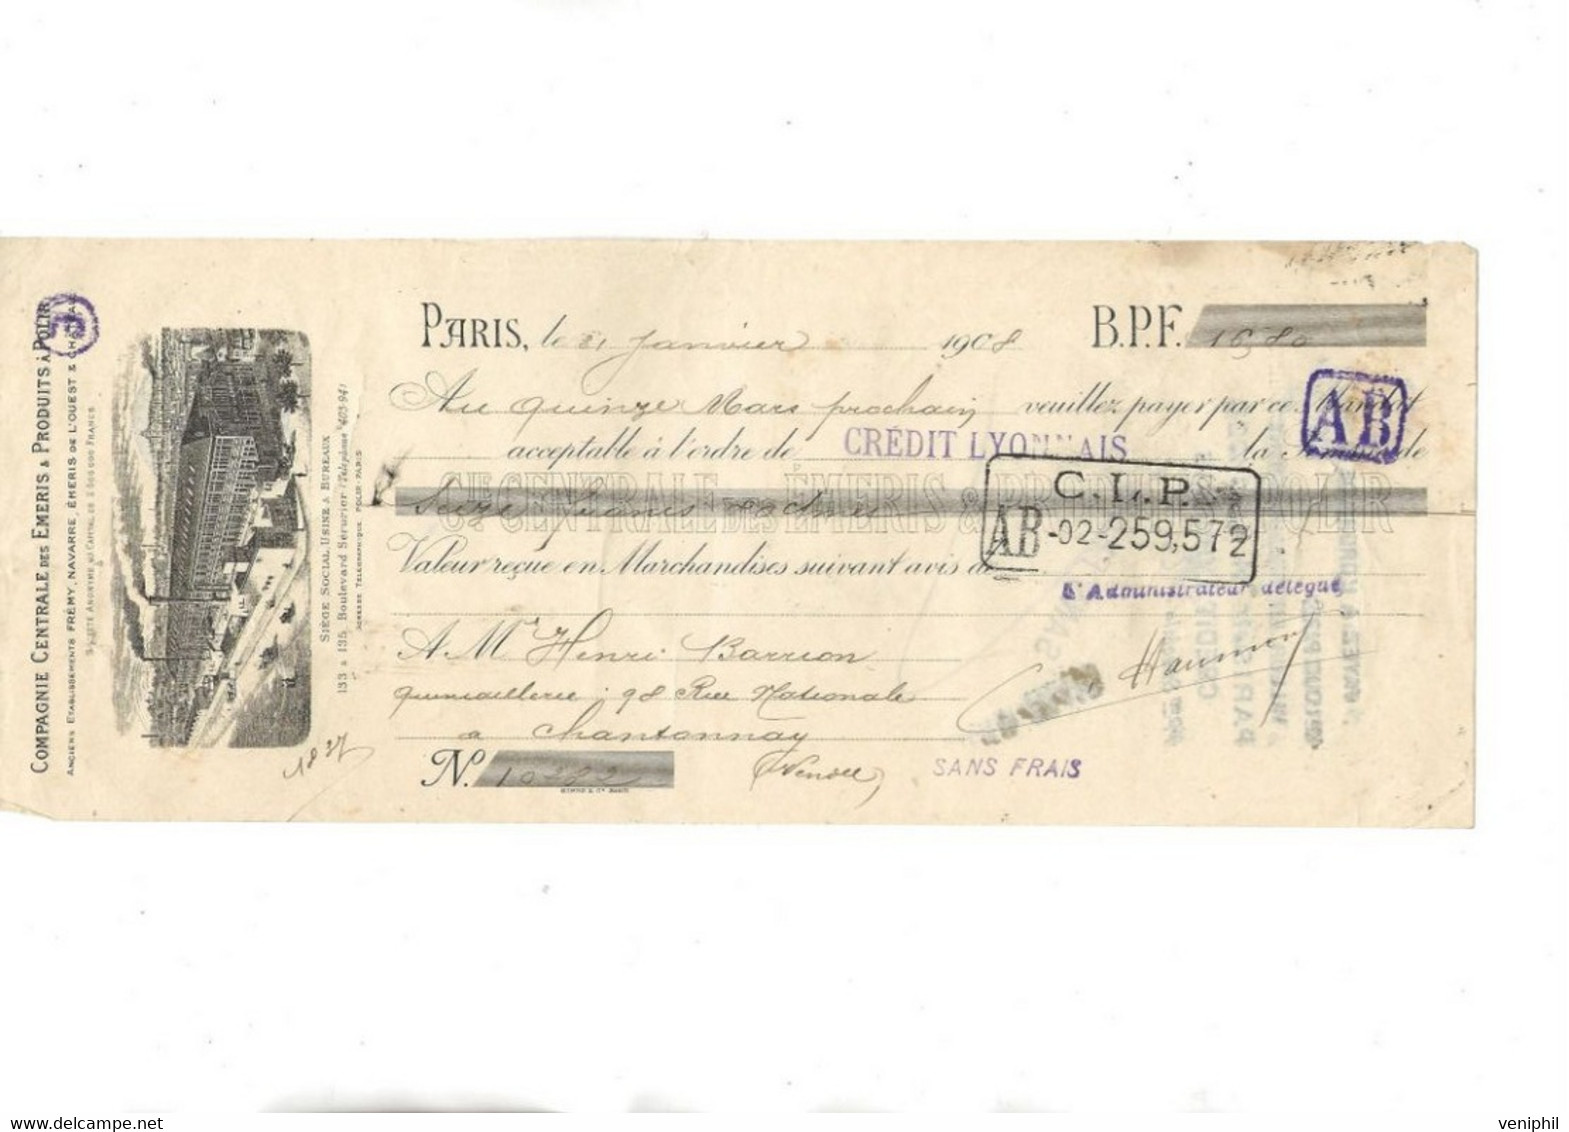 LETTRE DE CHANGE - COMPAGNIE CENTRALE DES EMERIS DE L'OUEST - PARIS 1908 - Bills Of Exchange